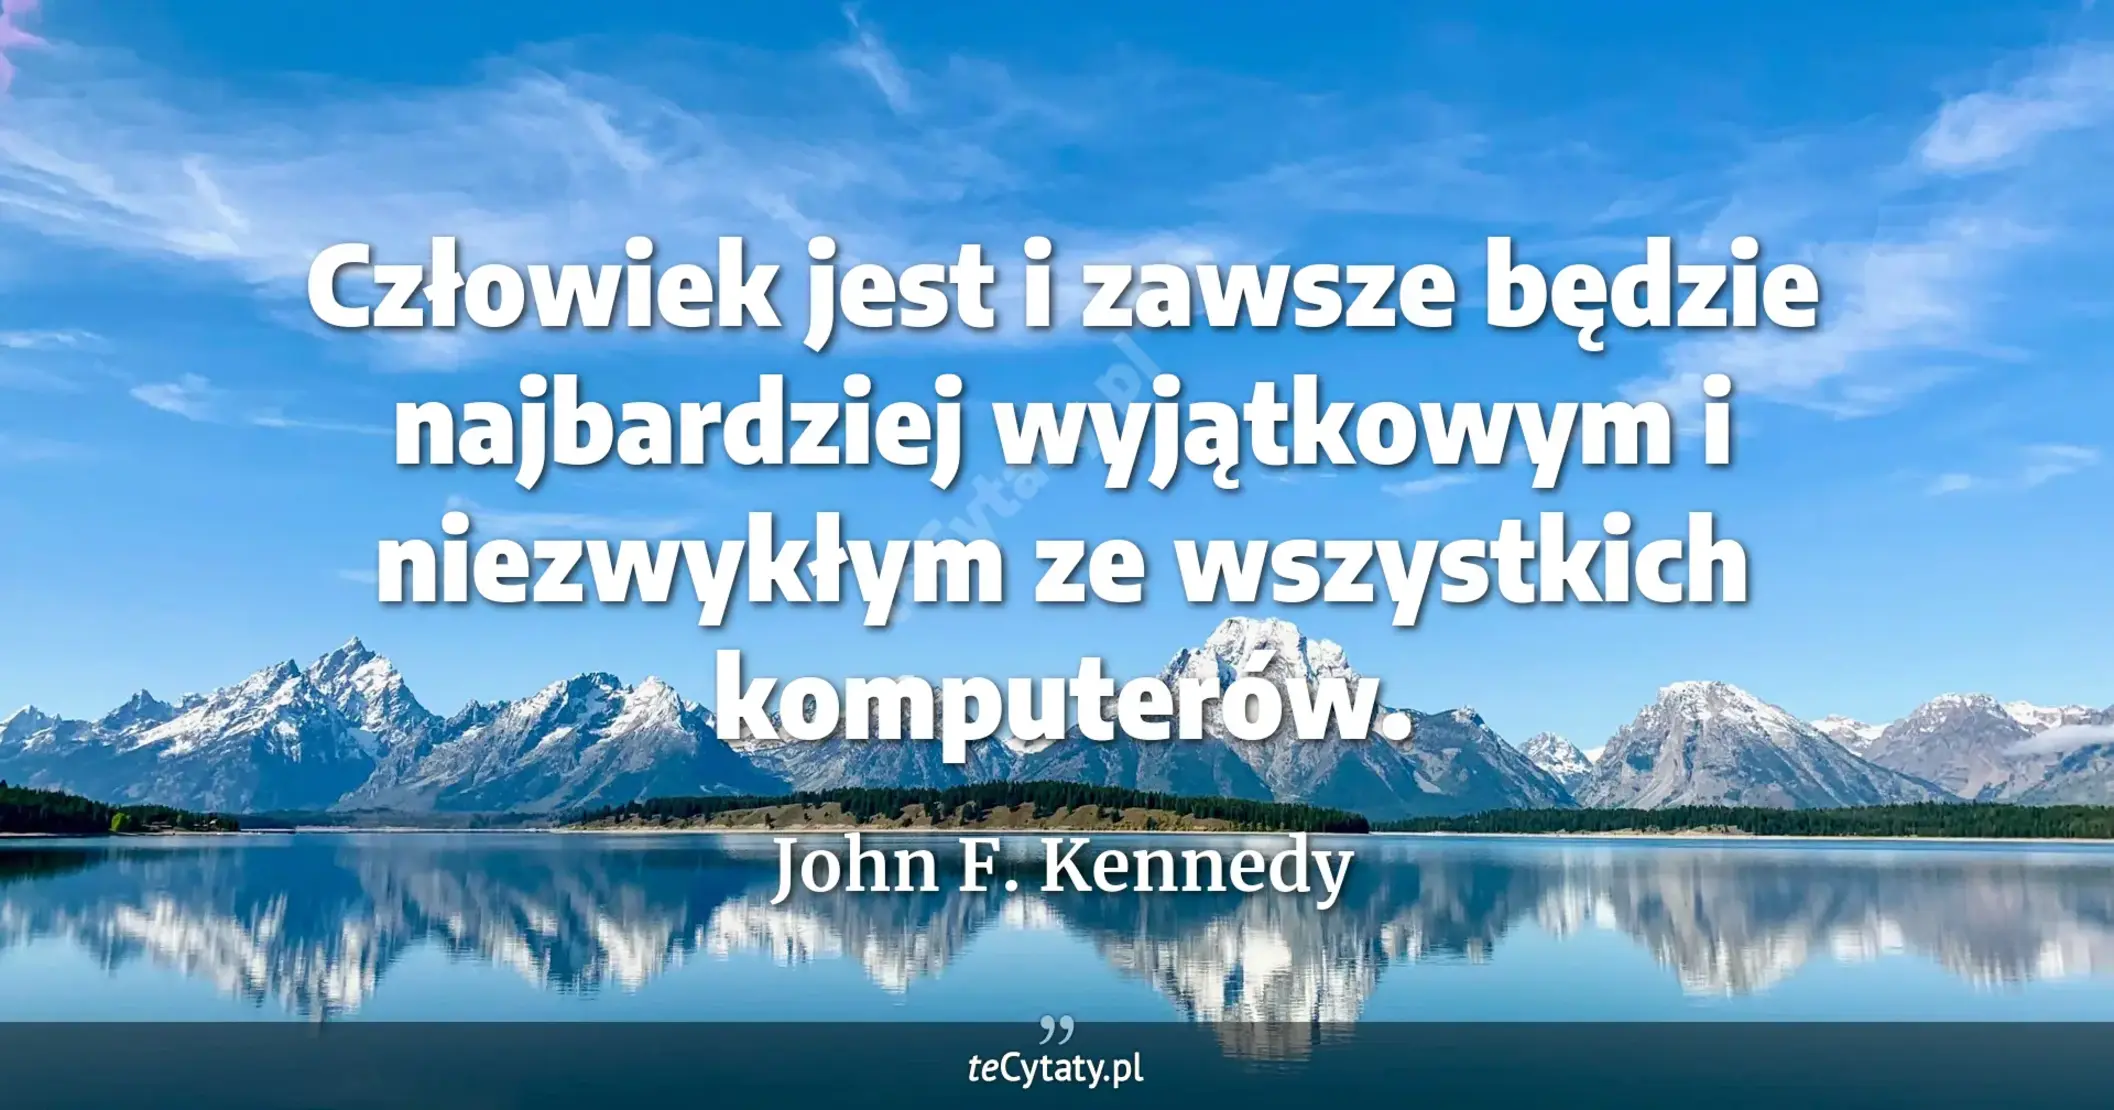 Człowiek jest i zawsze będzie najbardziej wyjątkowym i niezwykłym ze wszystkich komputerów. - John F. Kennedy